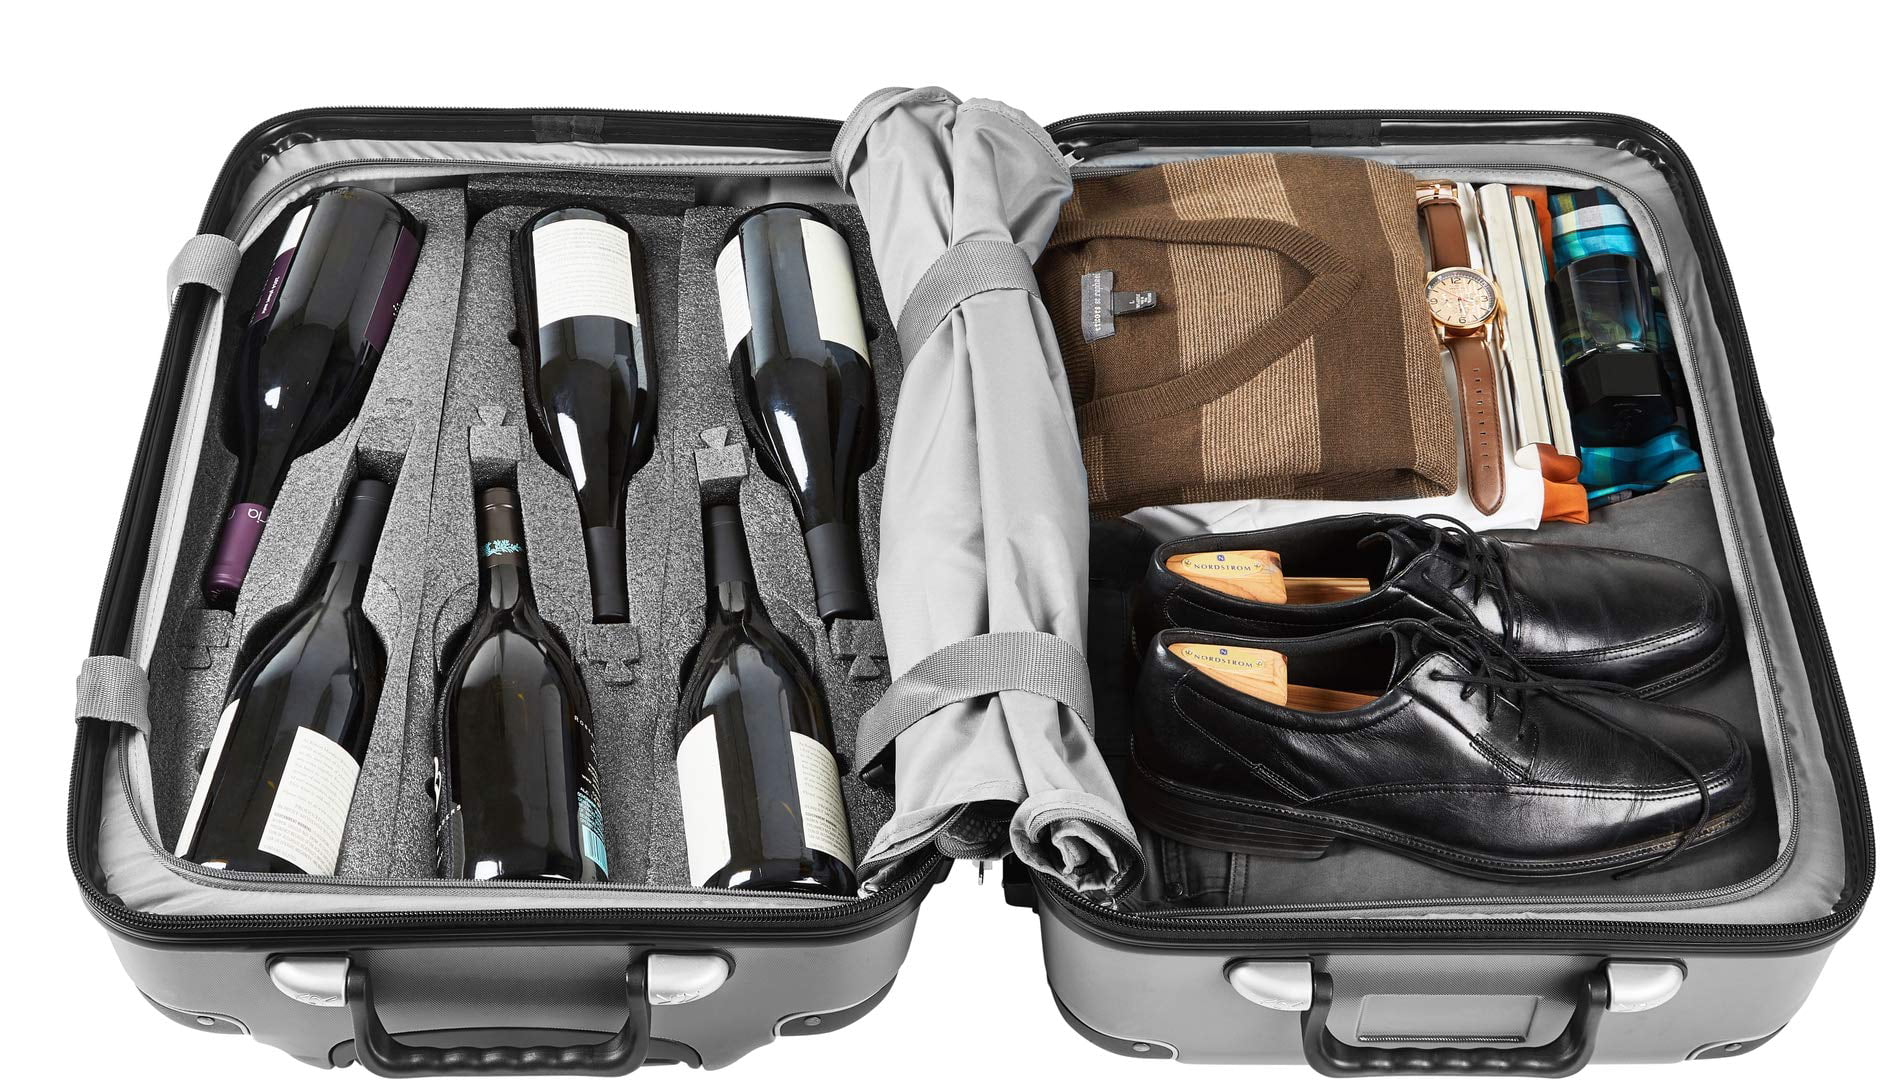 FlyWithWine Digital Luggage Scale Burgundy Bundle 2 items: VinGardeValise 12 Bottle Wine Travel Suitcase 